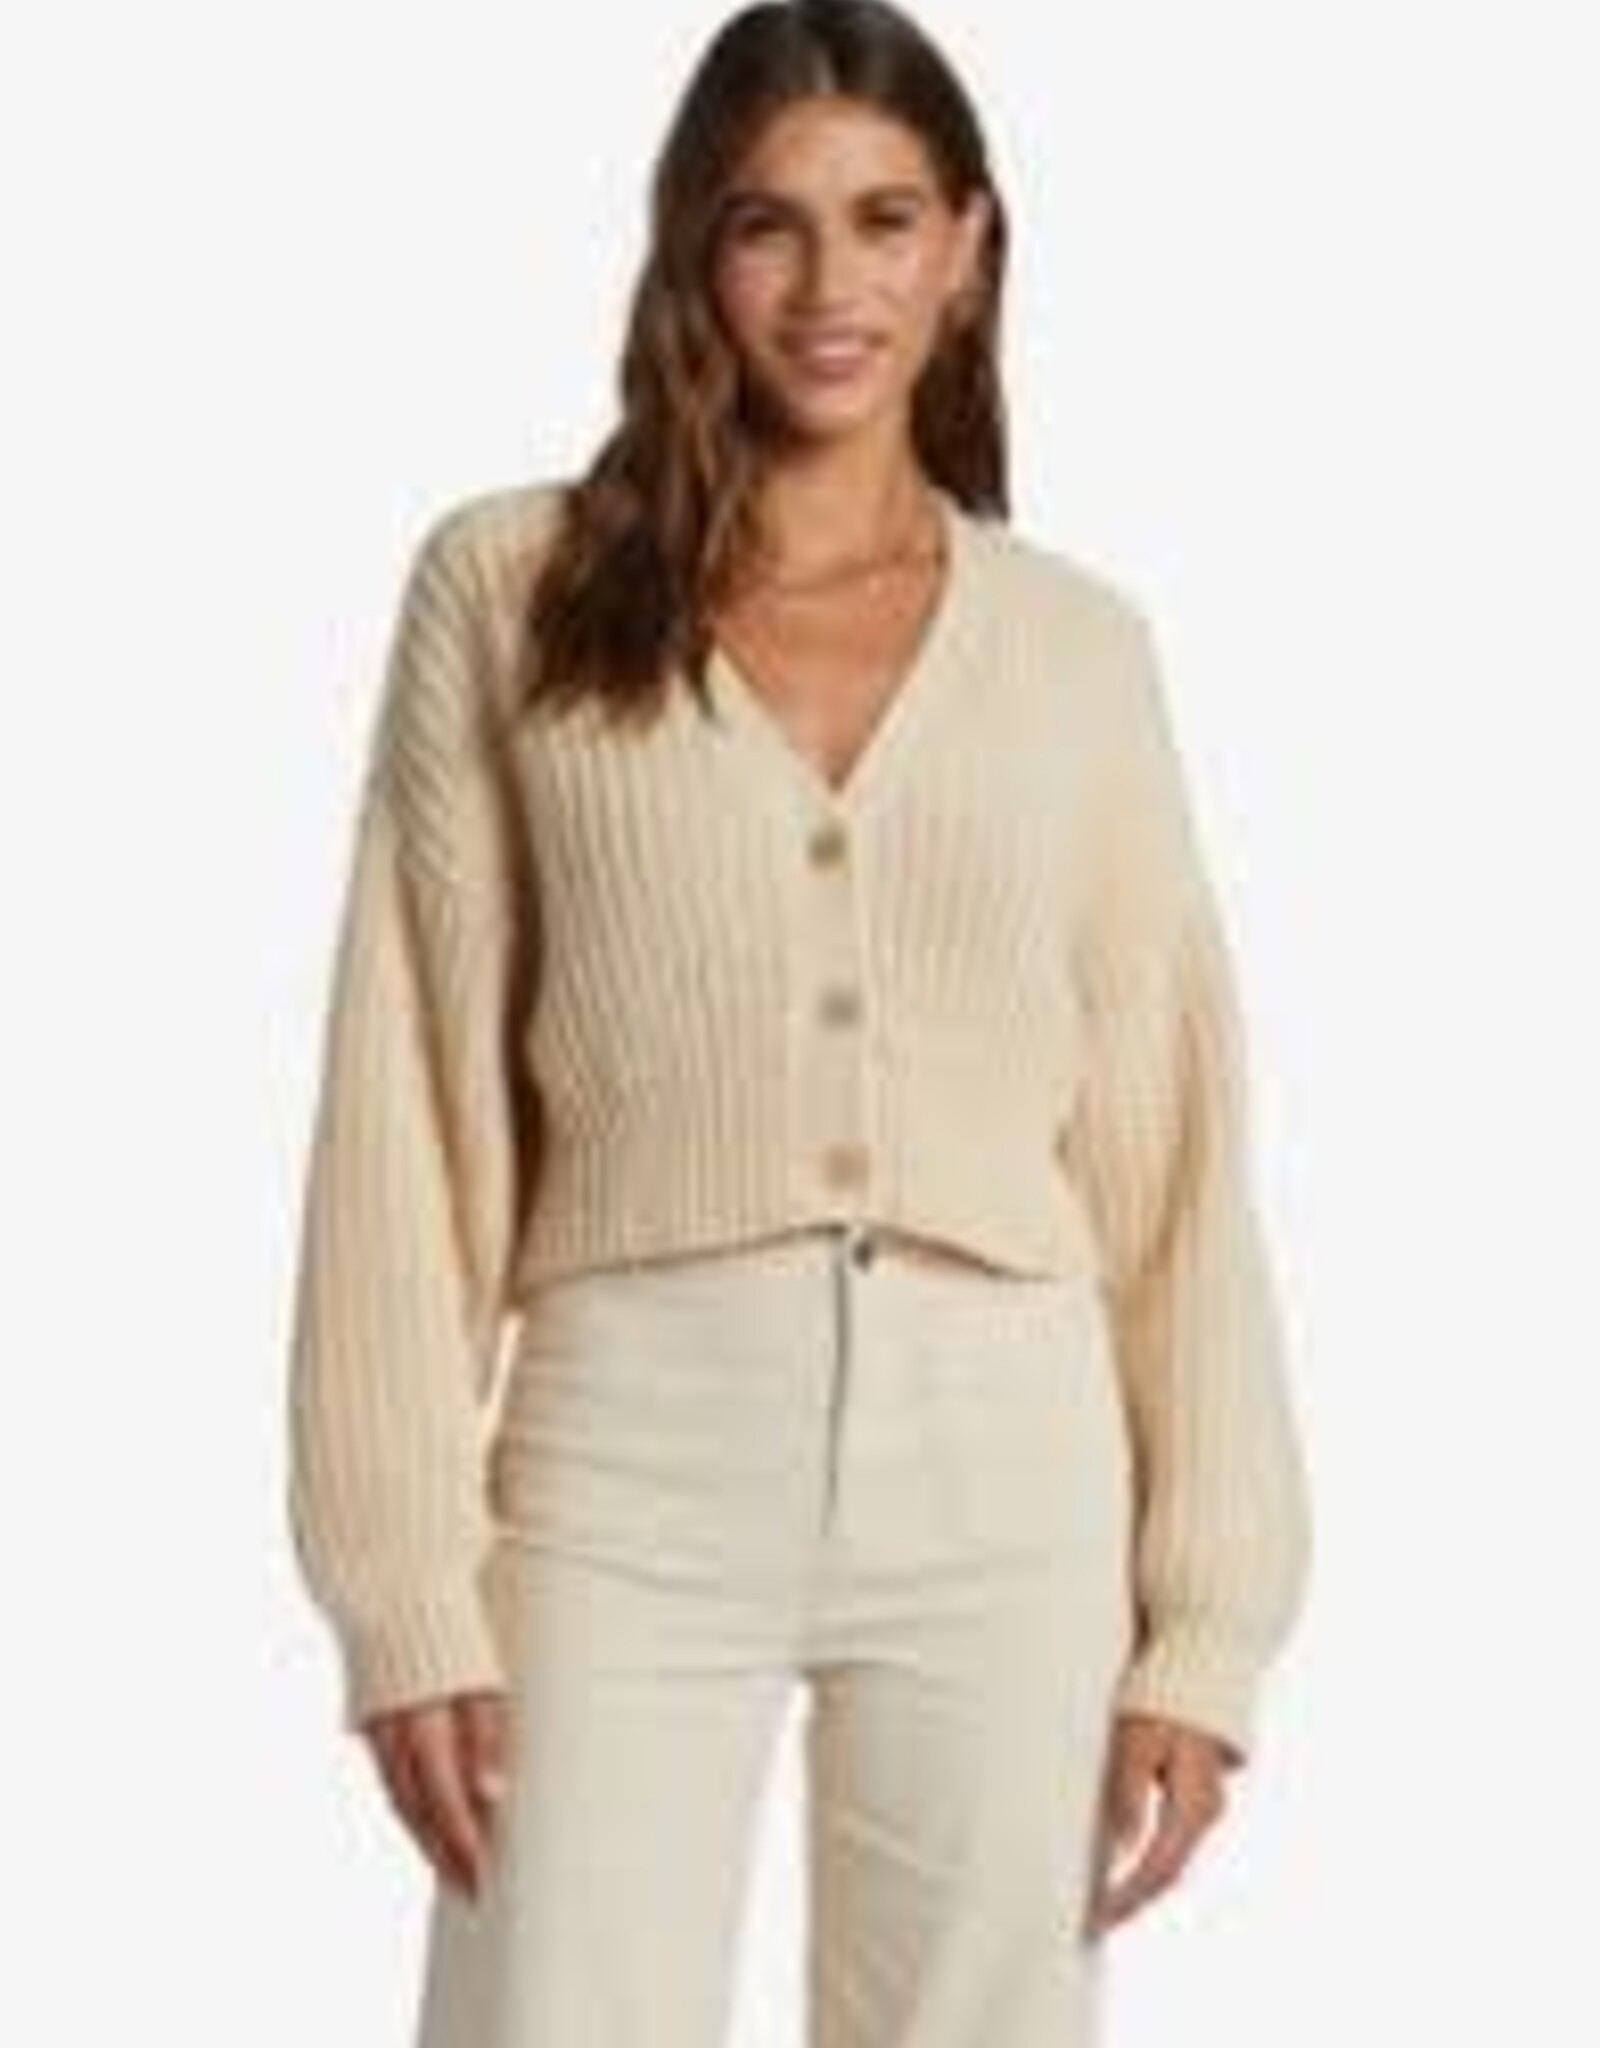 Roxy Roxy Sundaze Sweater- ARJSW03319